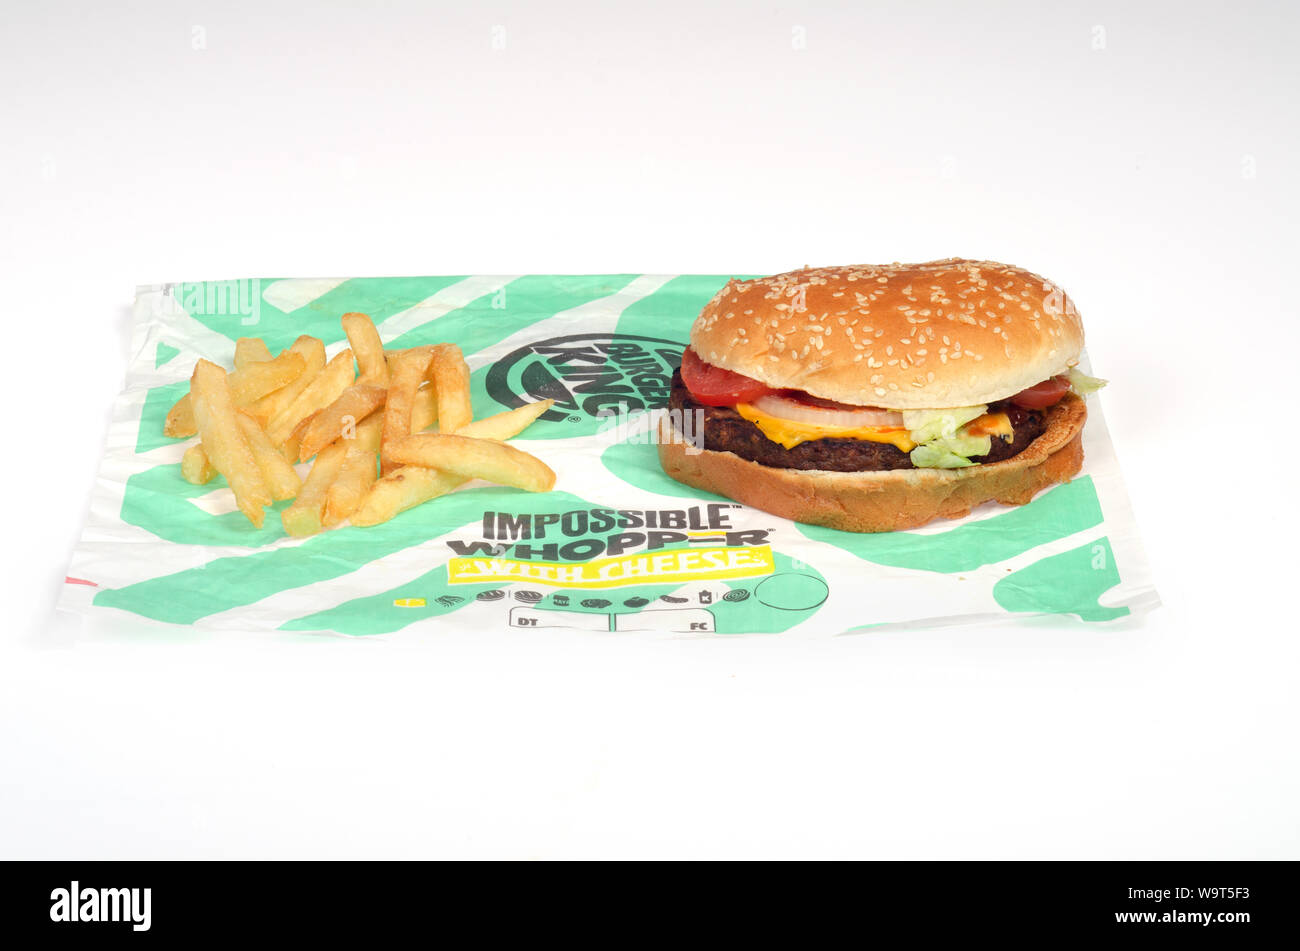 Burger King unmöglich Whopper mit Käse & Pommes frites auf Wrapper ein Vegetarischer Burger Sandwich mit einer unmöglichen Lebensmittel fleischlose, auf pflanzlicher Basis Stockfoto